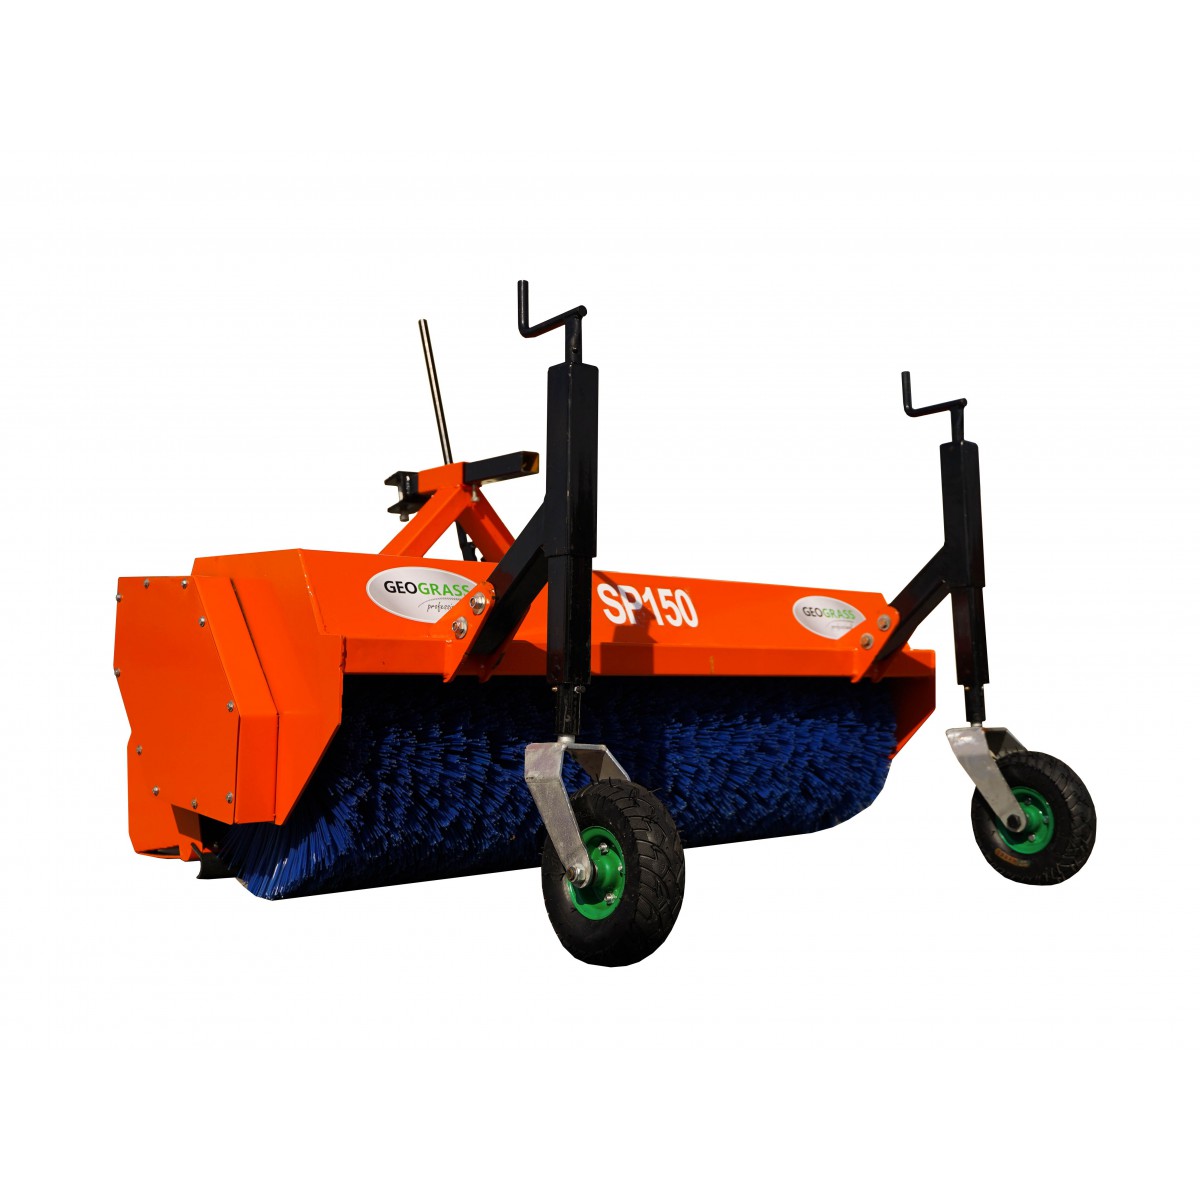 Kehrmaschine SP150 für Geograss-Traktor